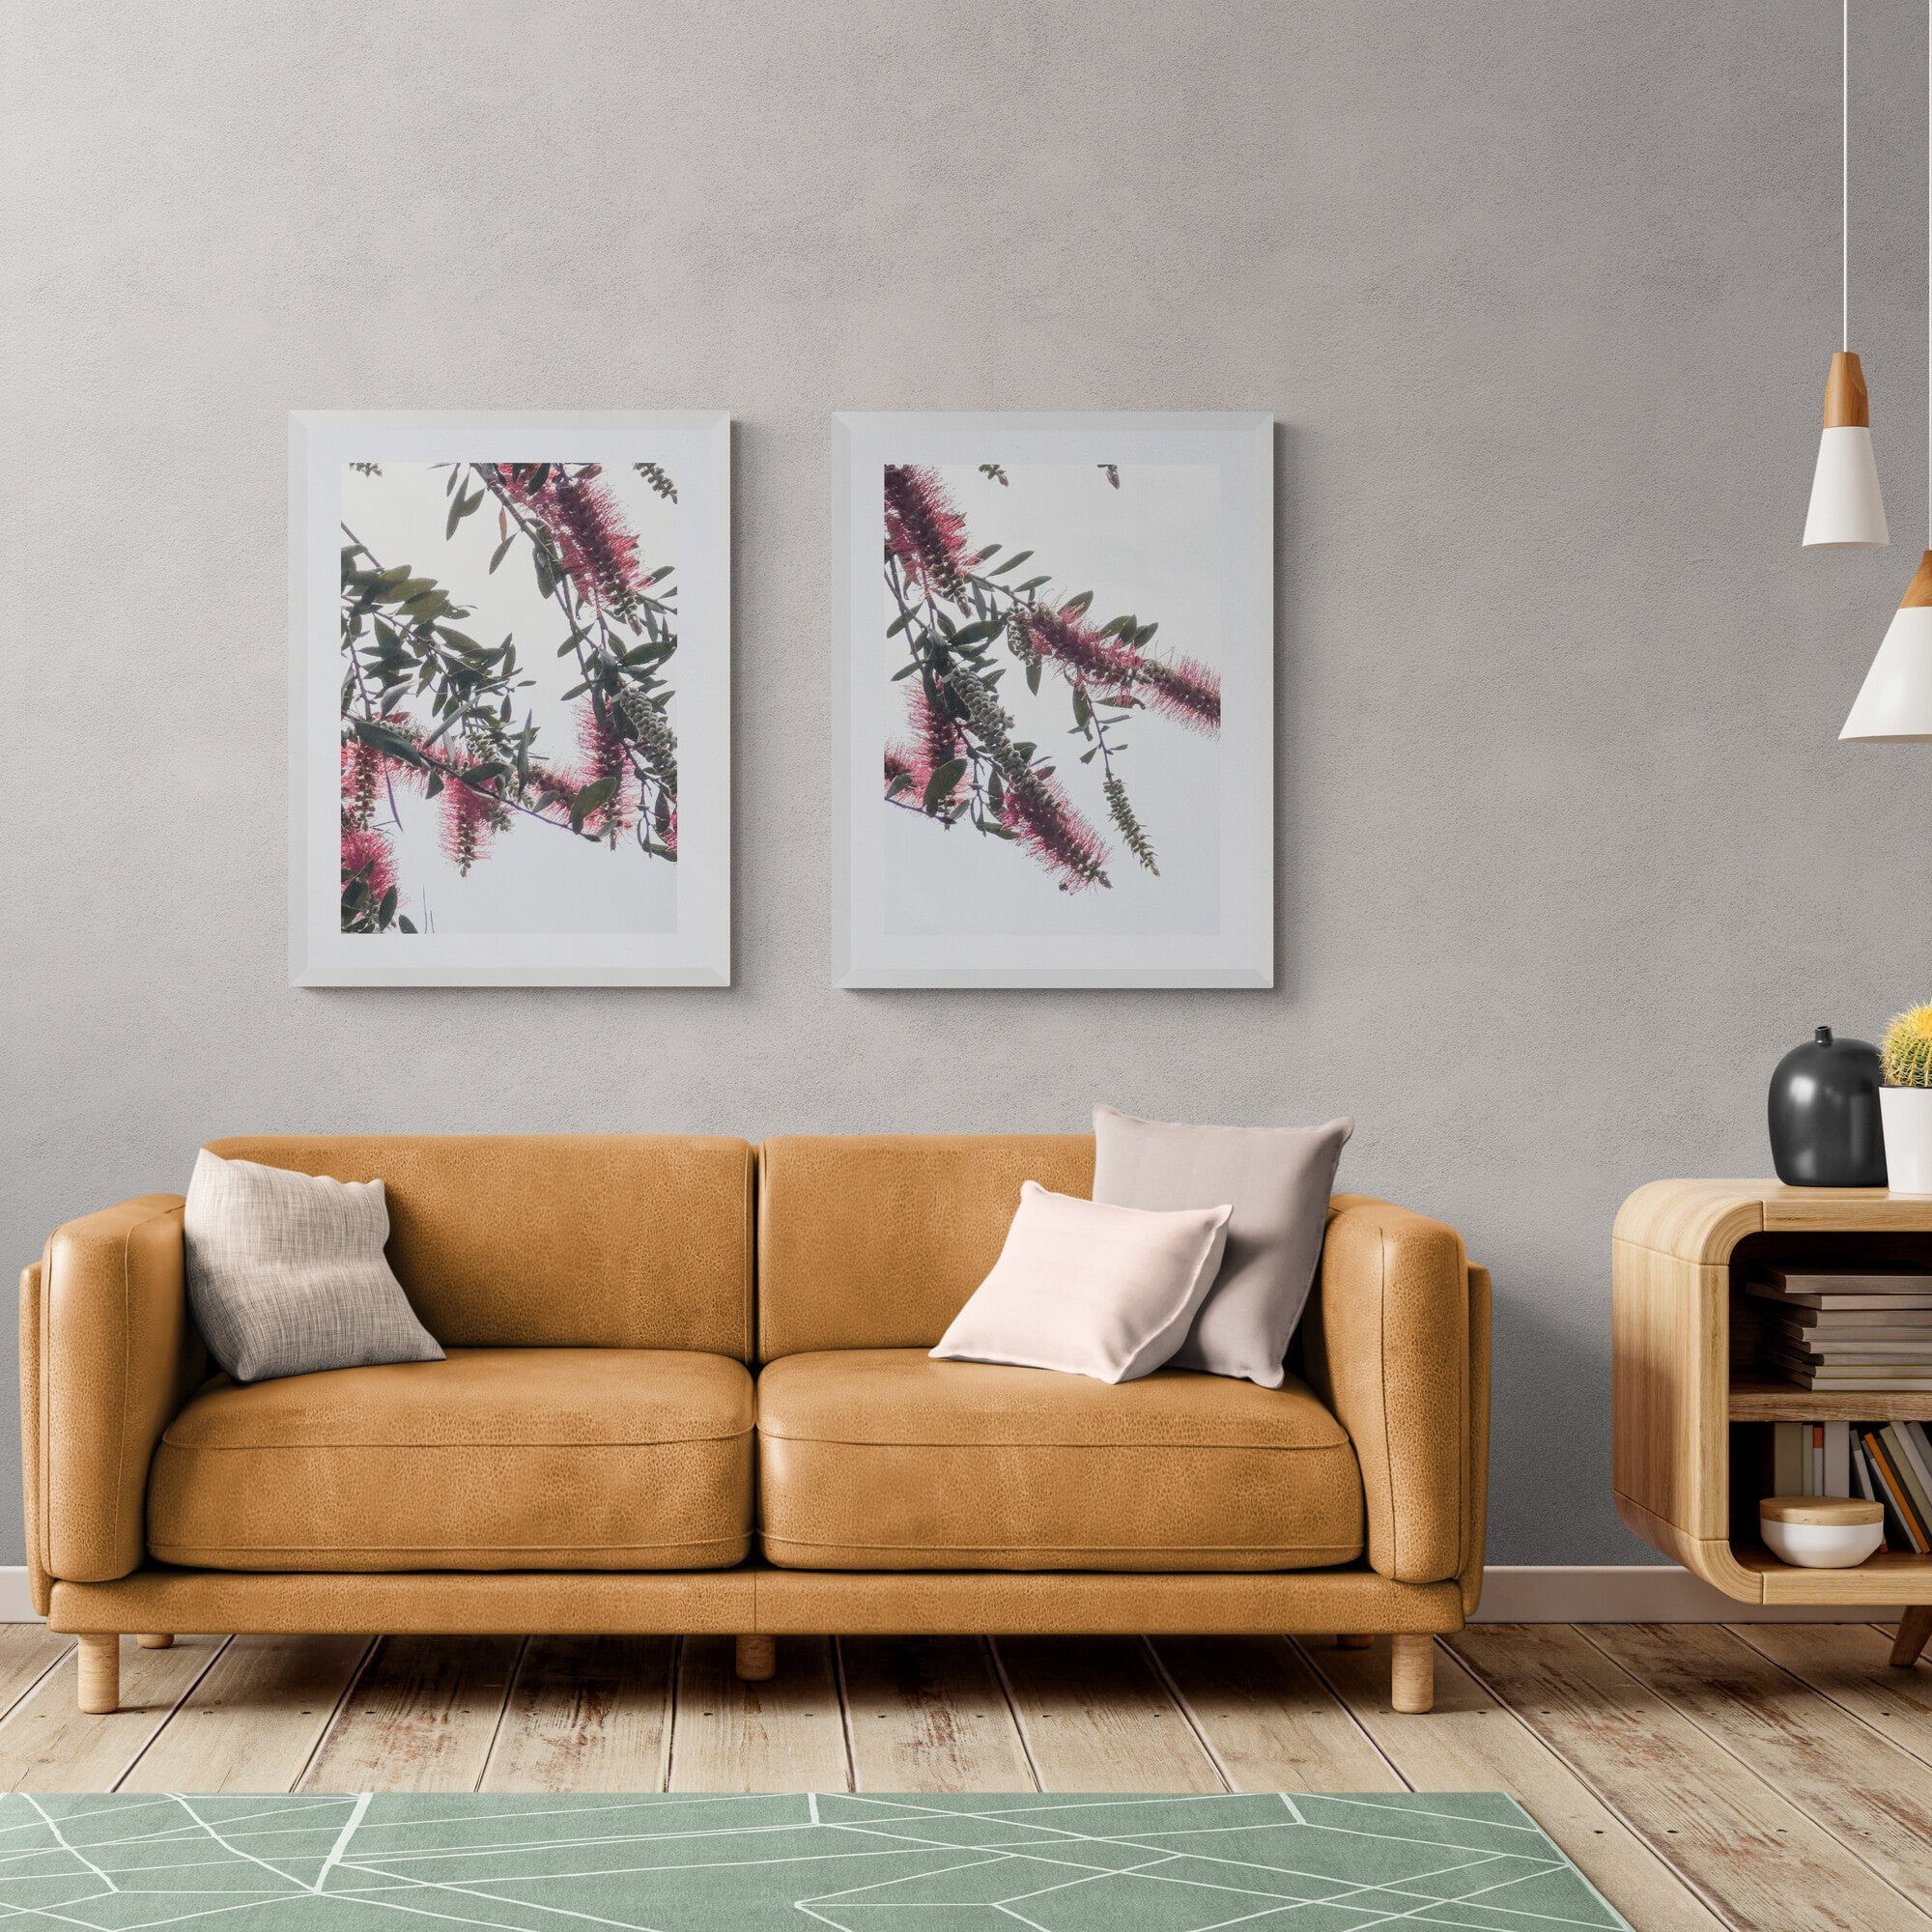 Adam Davies Framed Bottlebrush Flowers #2 Framed & Mounted Print